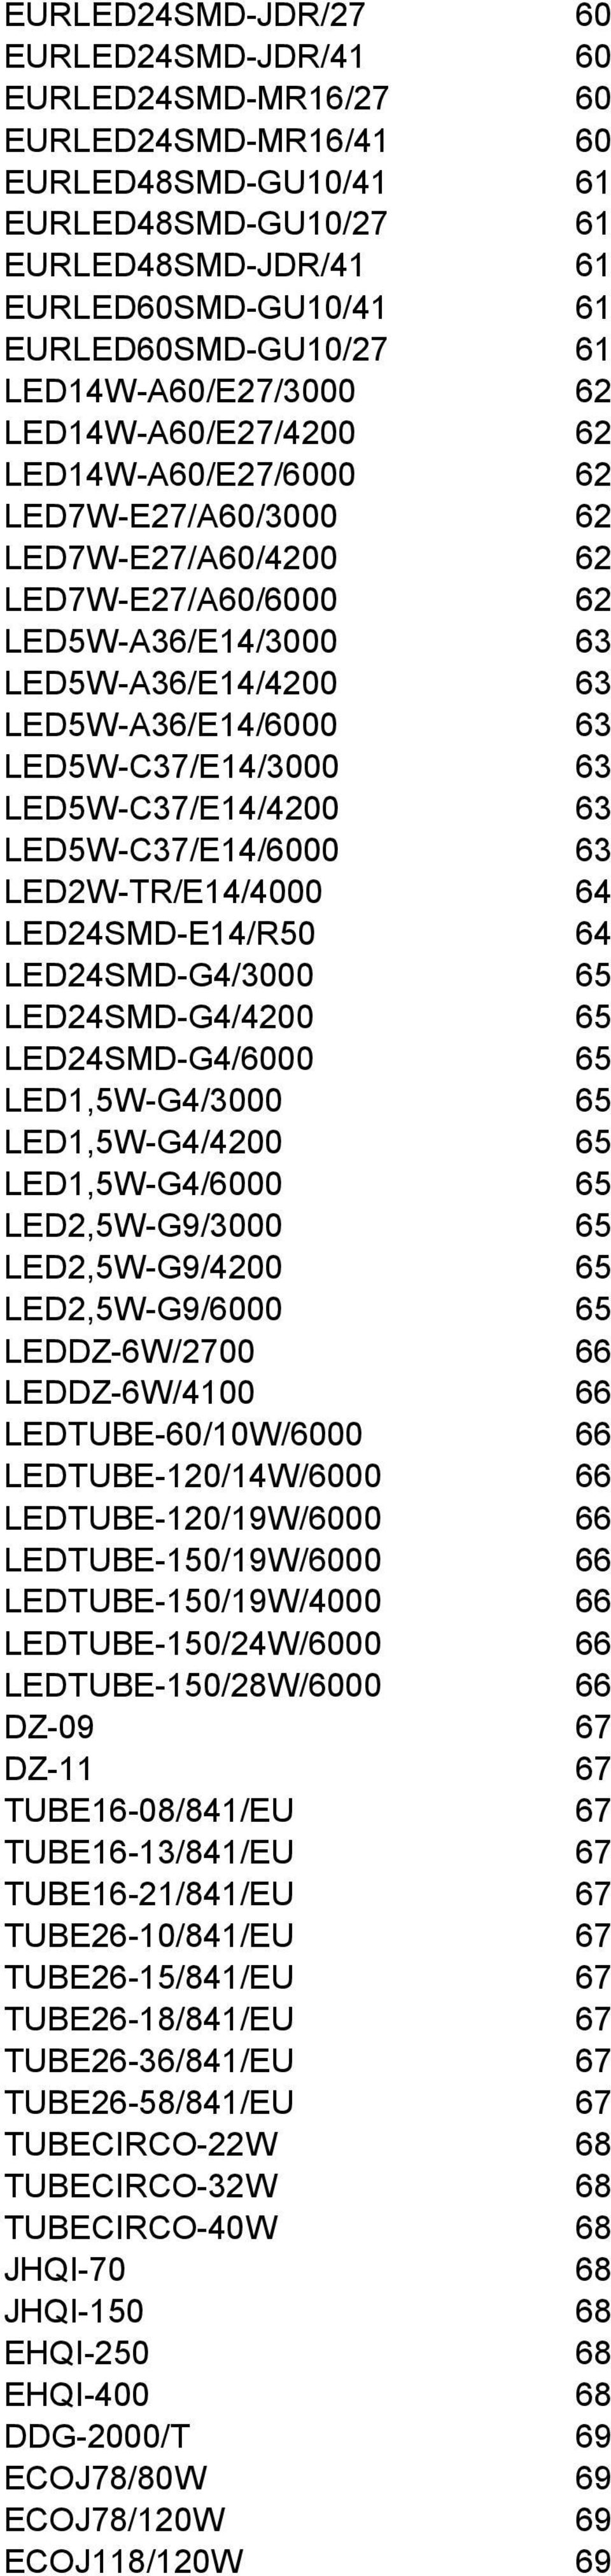 LED5W-A36//6000 63 LED5W-C37//3000 63 LED5W-C37//4200 63 LED5W-C37//6000 63 LED2W-TR//4000 64 LED24SMD-/R50 64 LED24SMD-G4/3000 65 LED24SMD-G4/4200 65 LED24SMD-G4/6000 65 LED1,5W-G4/3000 65